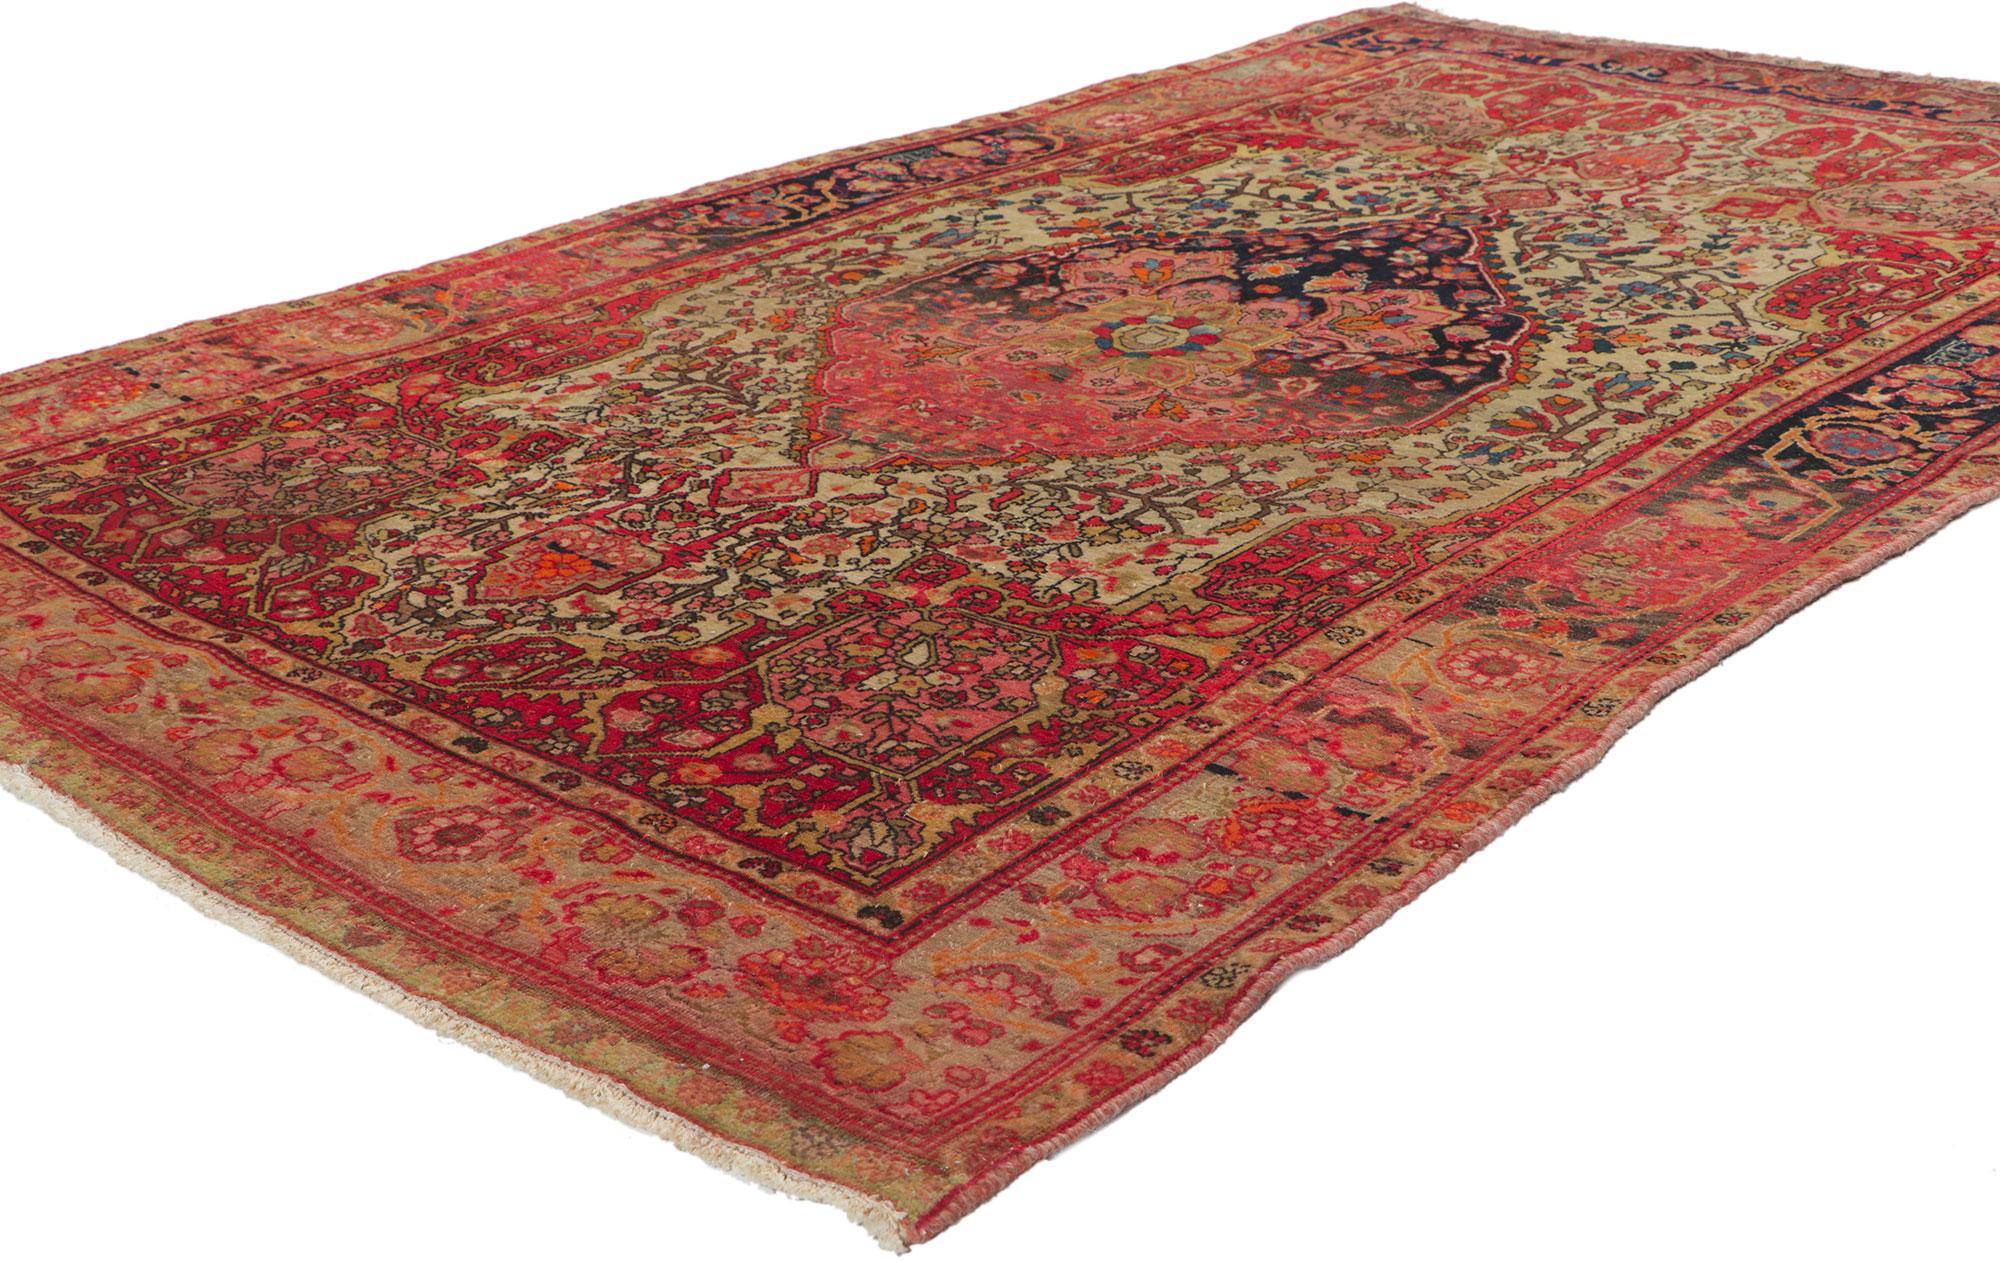 61112 Antique Persian Sarouk Farahan rug, 04'00 x 06'08.